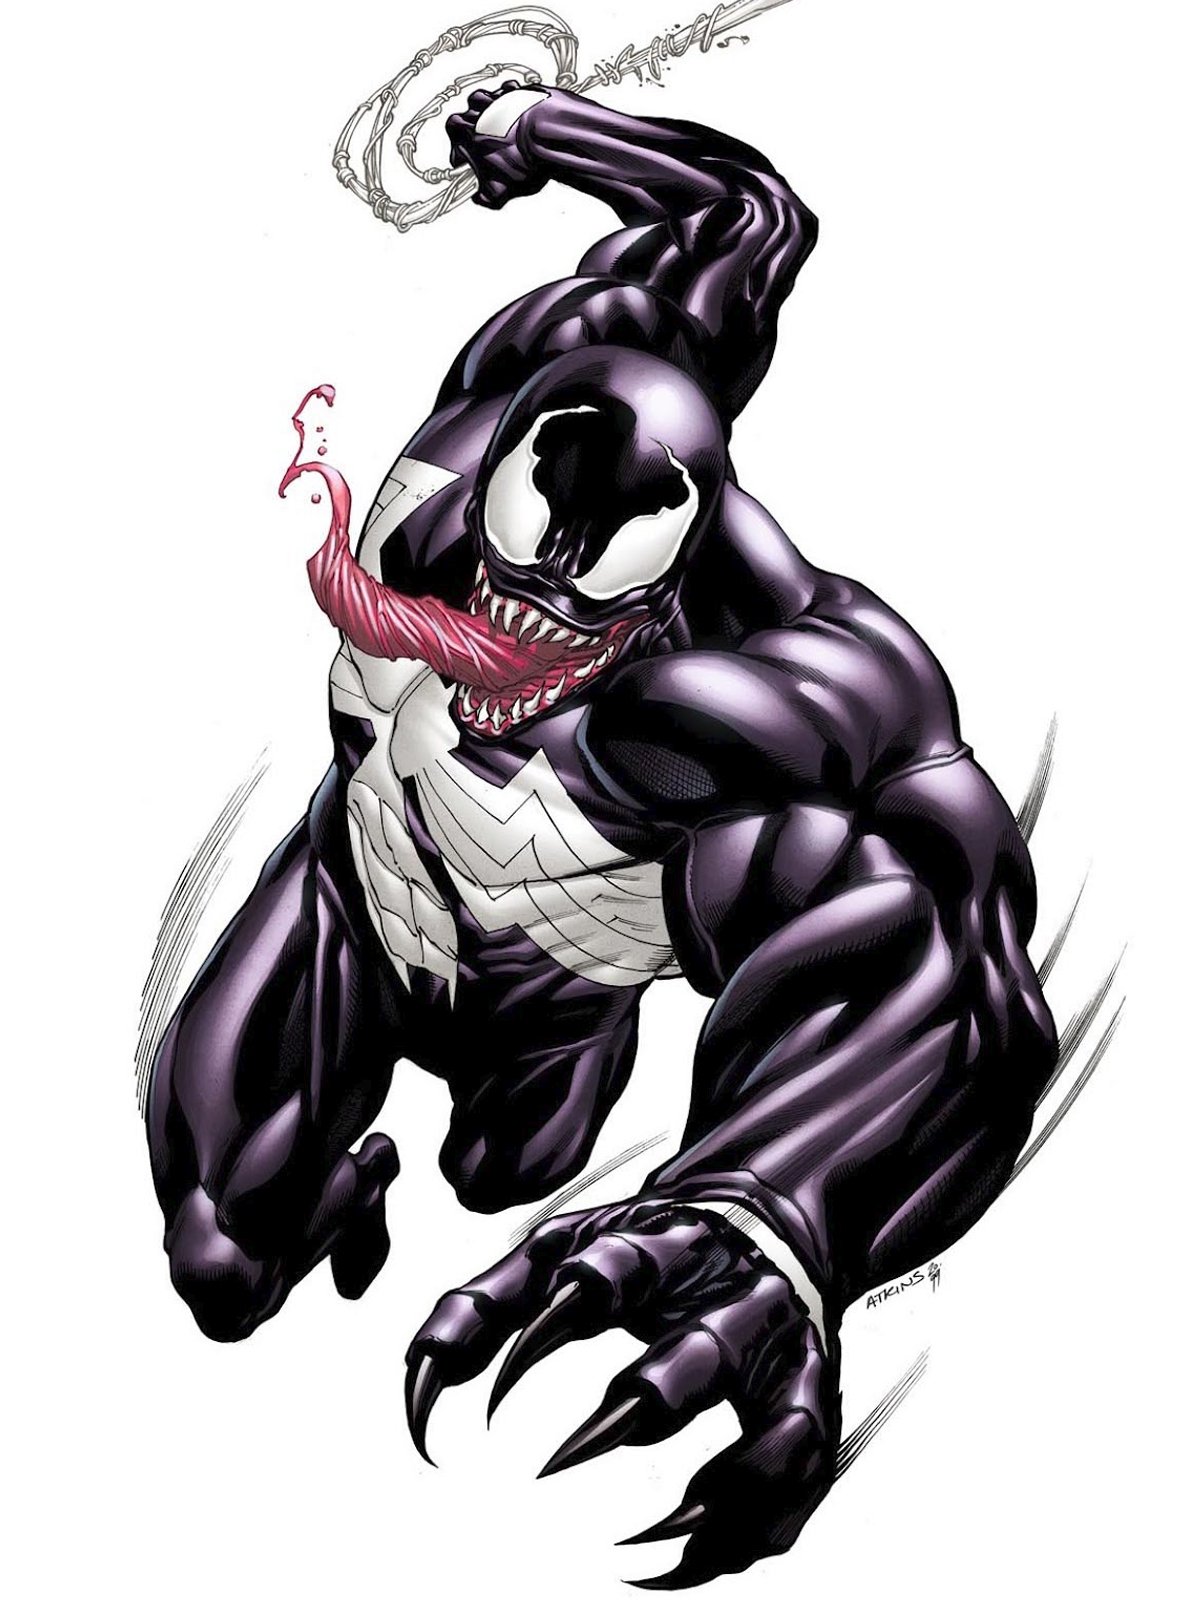 Plus d'un an après, Sony relance le projet Venom